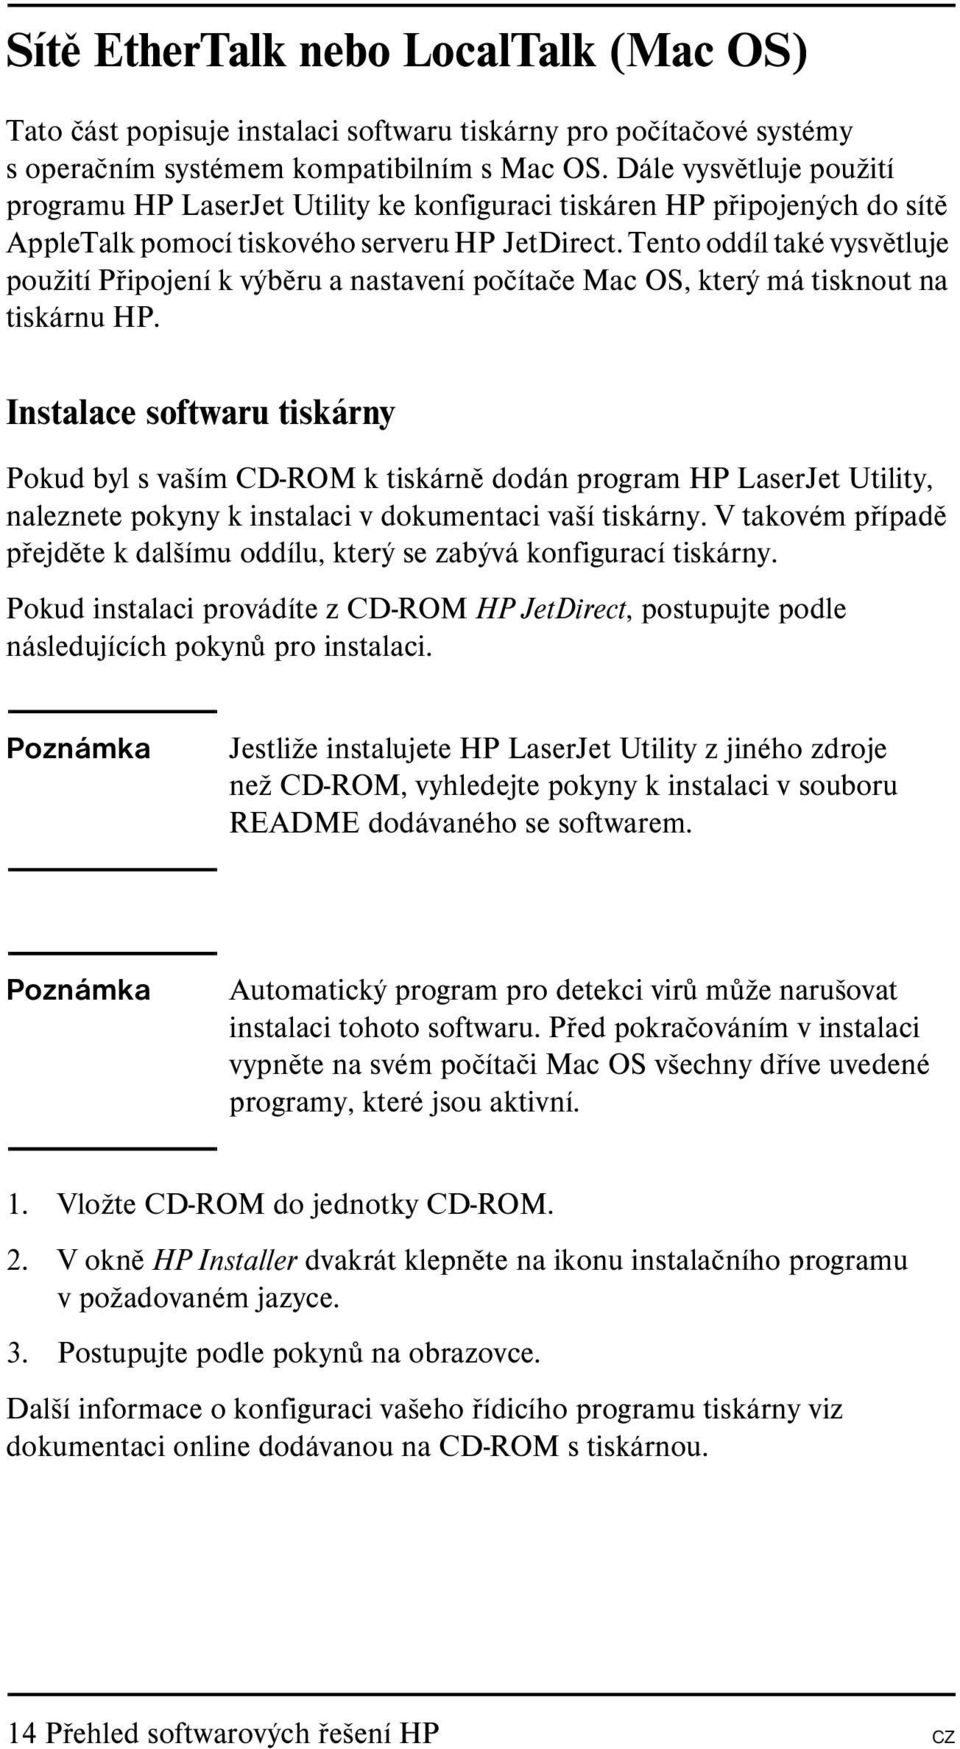 Tento oddíl také vysvětluje použití Připojení k výběru a nastavení počítače Mac OS, který má tisknout na tiskárnu HP.